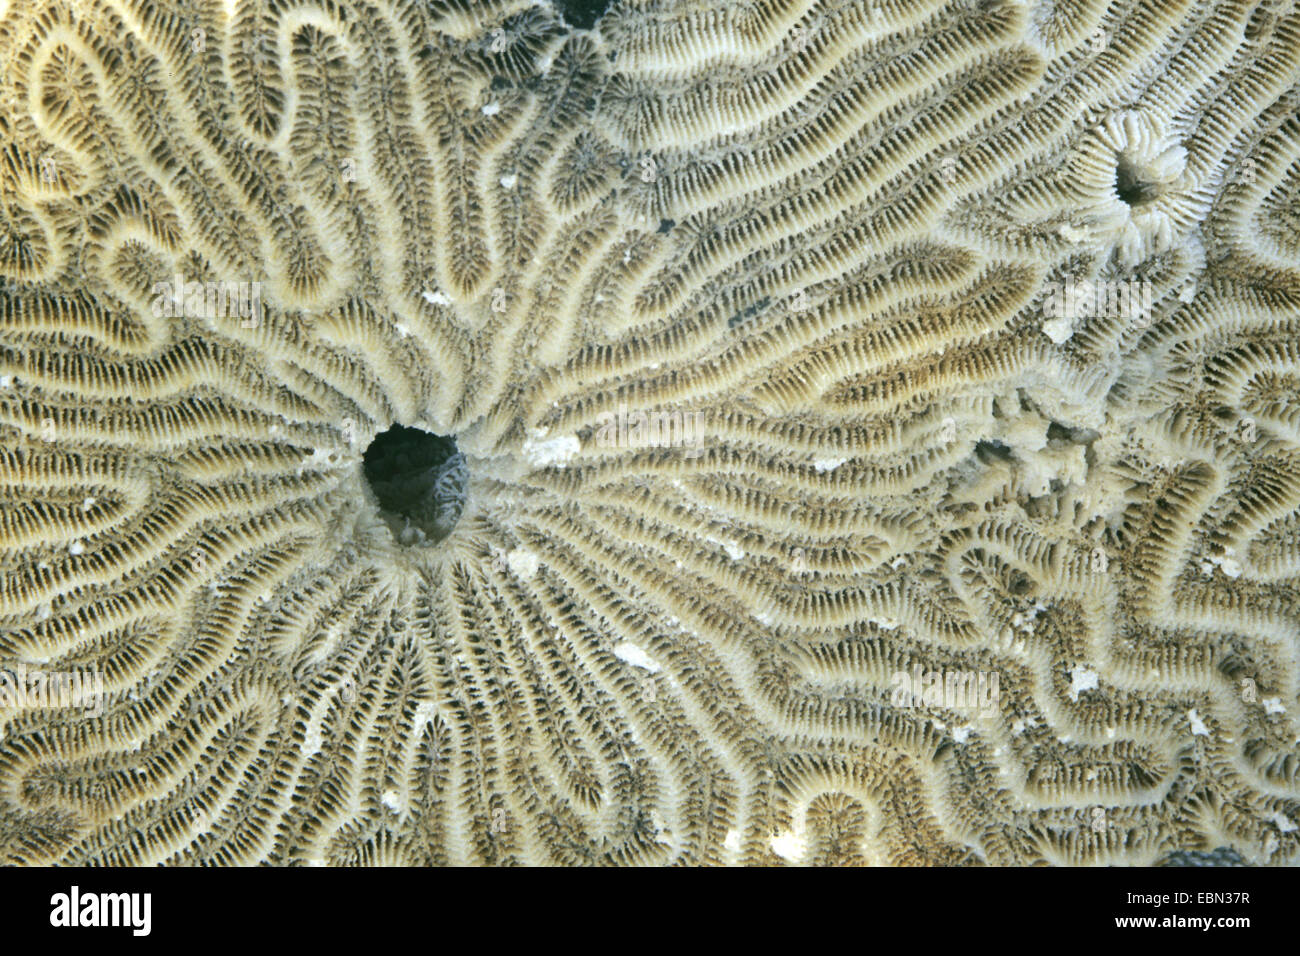 Corail cerveau symétrique (Diploria strigosa), détail Banque D'Images